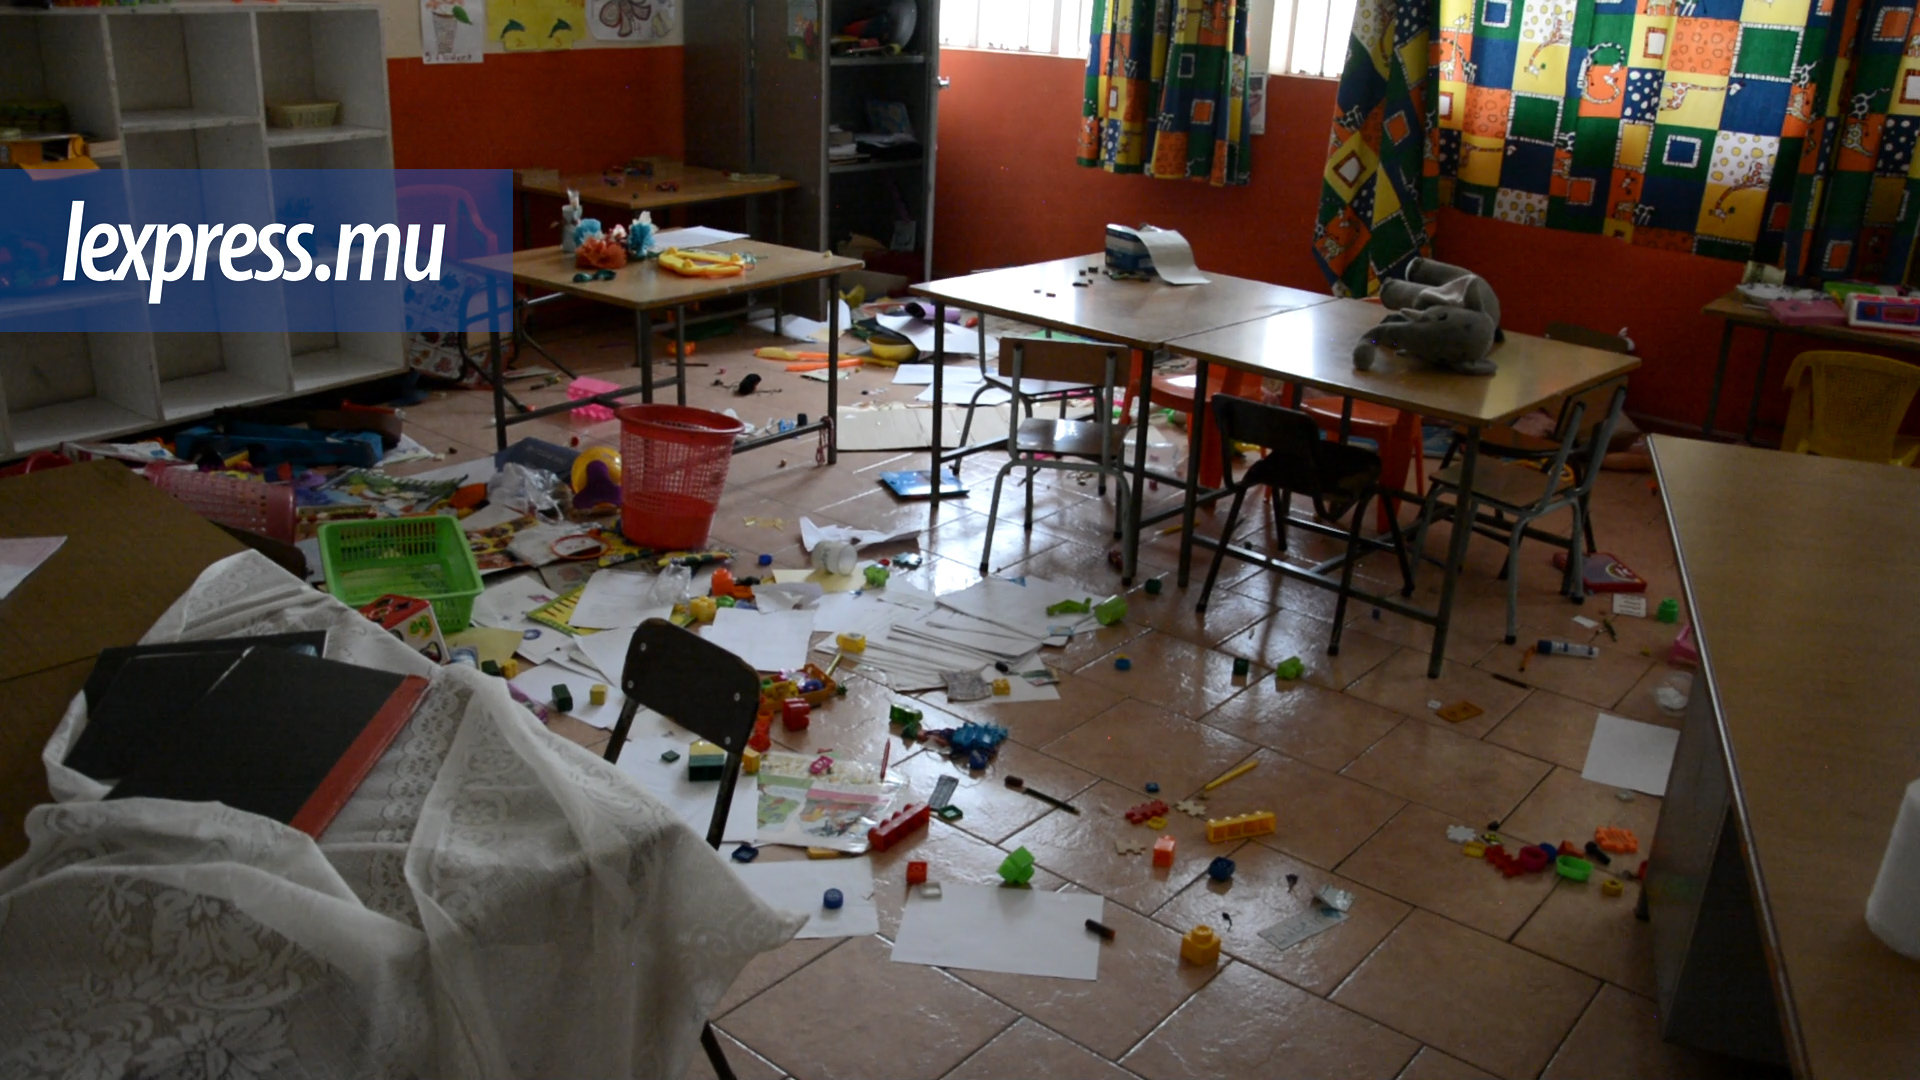 Actes de vandalisme dans une école maternelle de Pailles